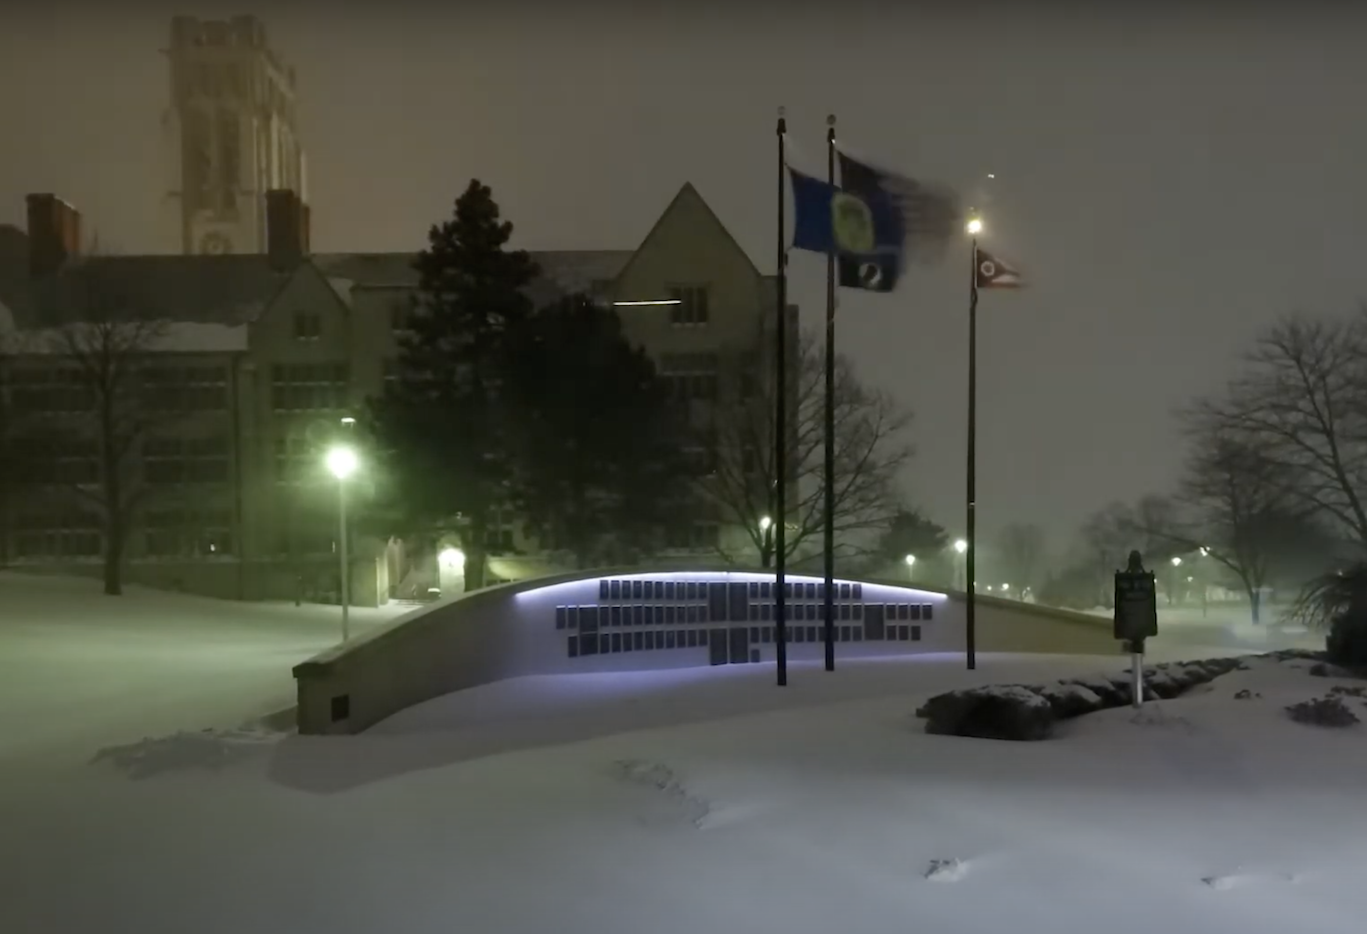 Snowfall on campus near Field House